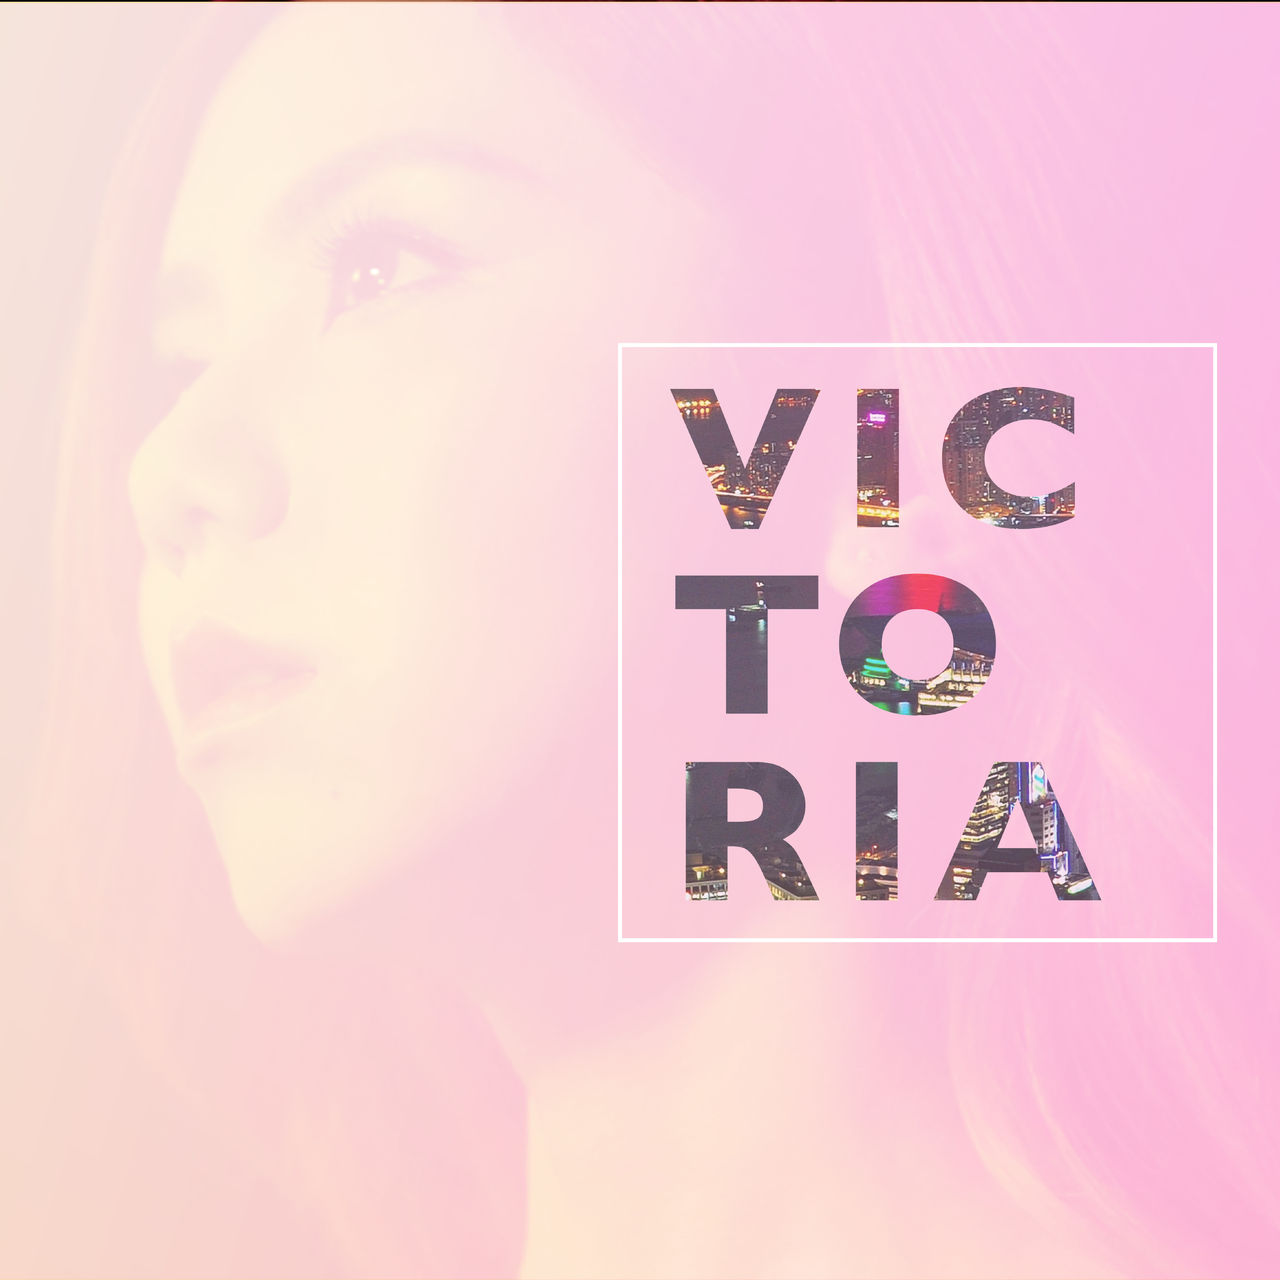 Victoria(鄧紫棋演唱歌曲)